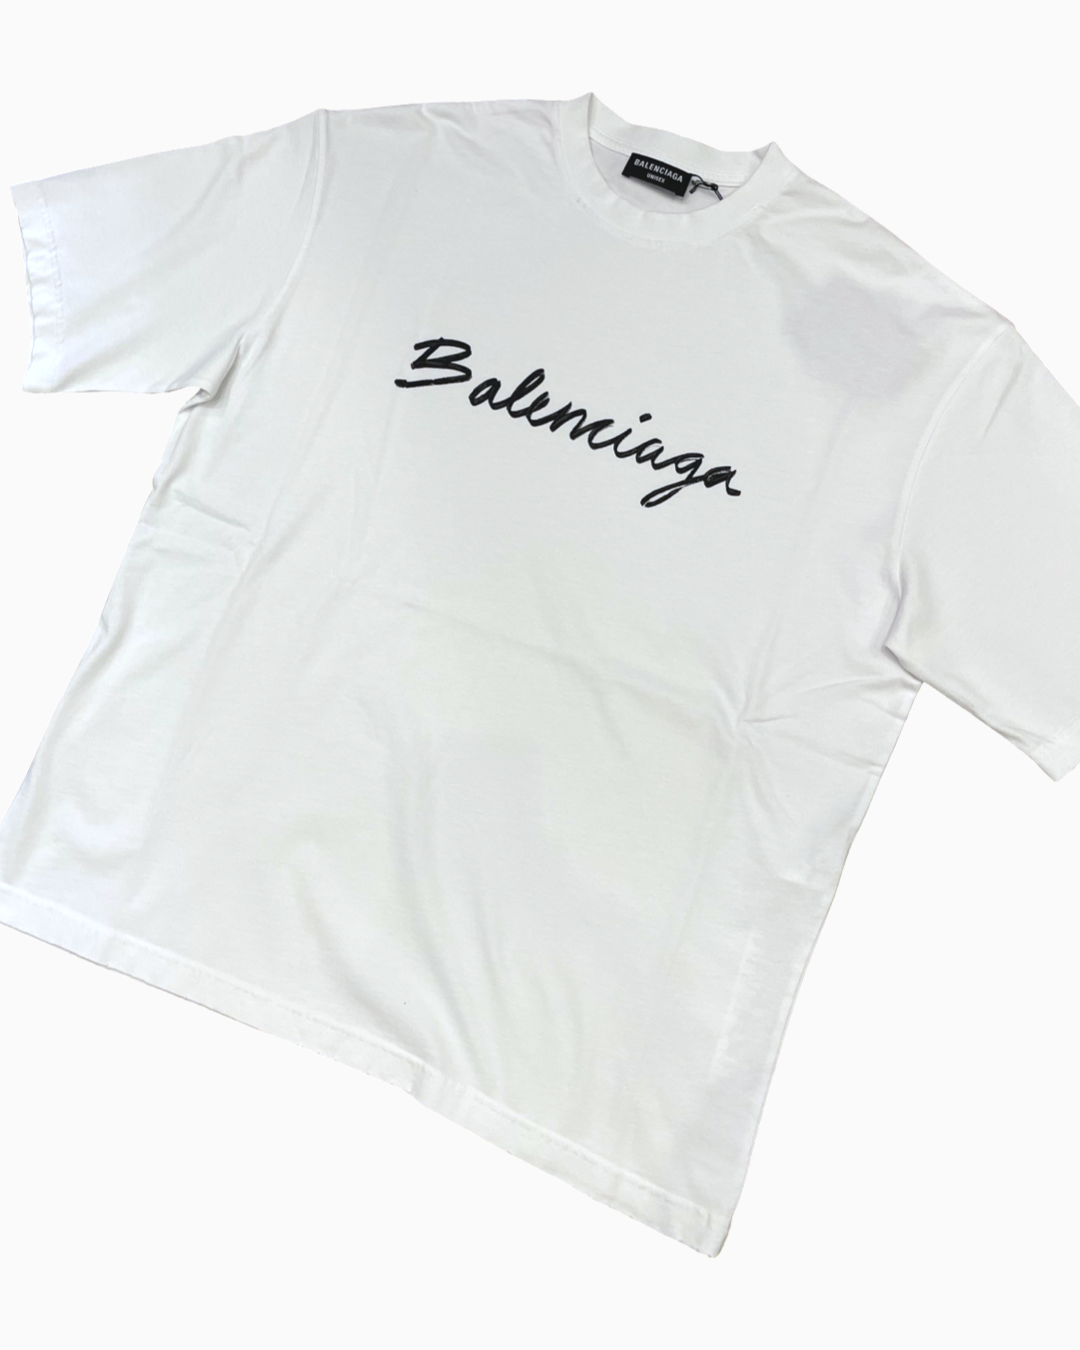 Balenciaga Script Logo Tshirt BlackWhite  FW22 Mens  US